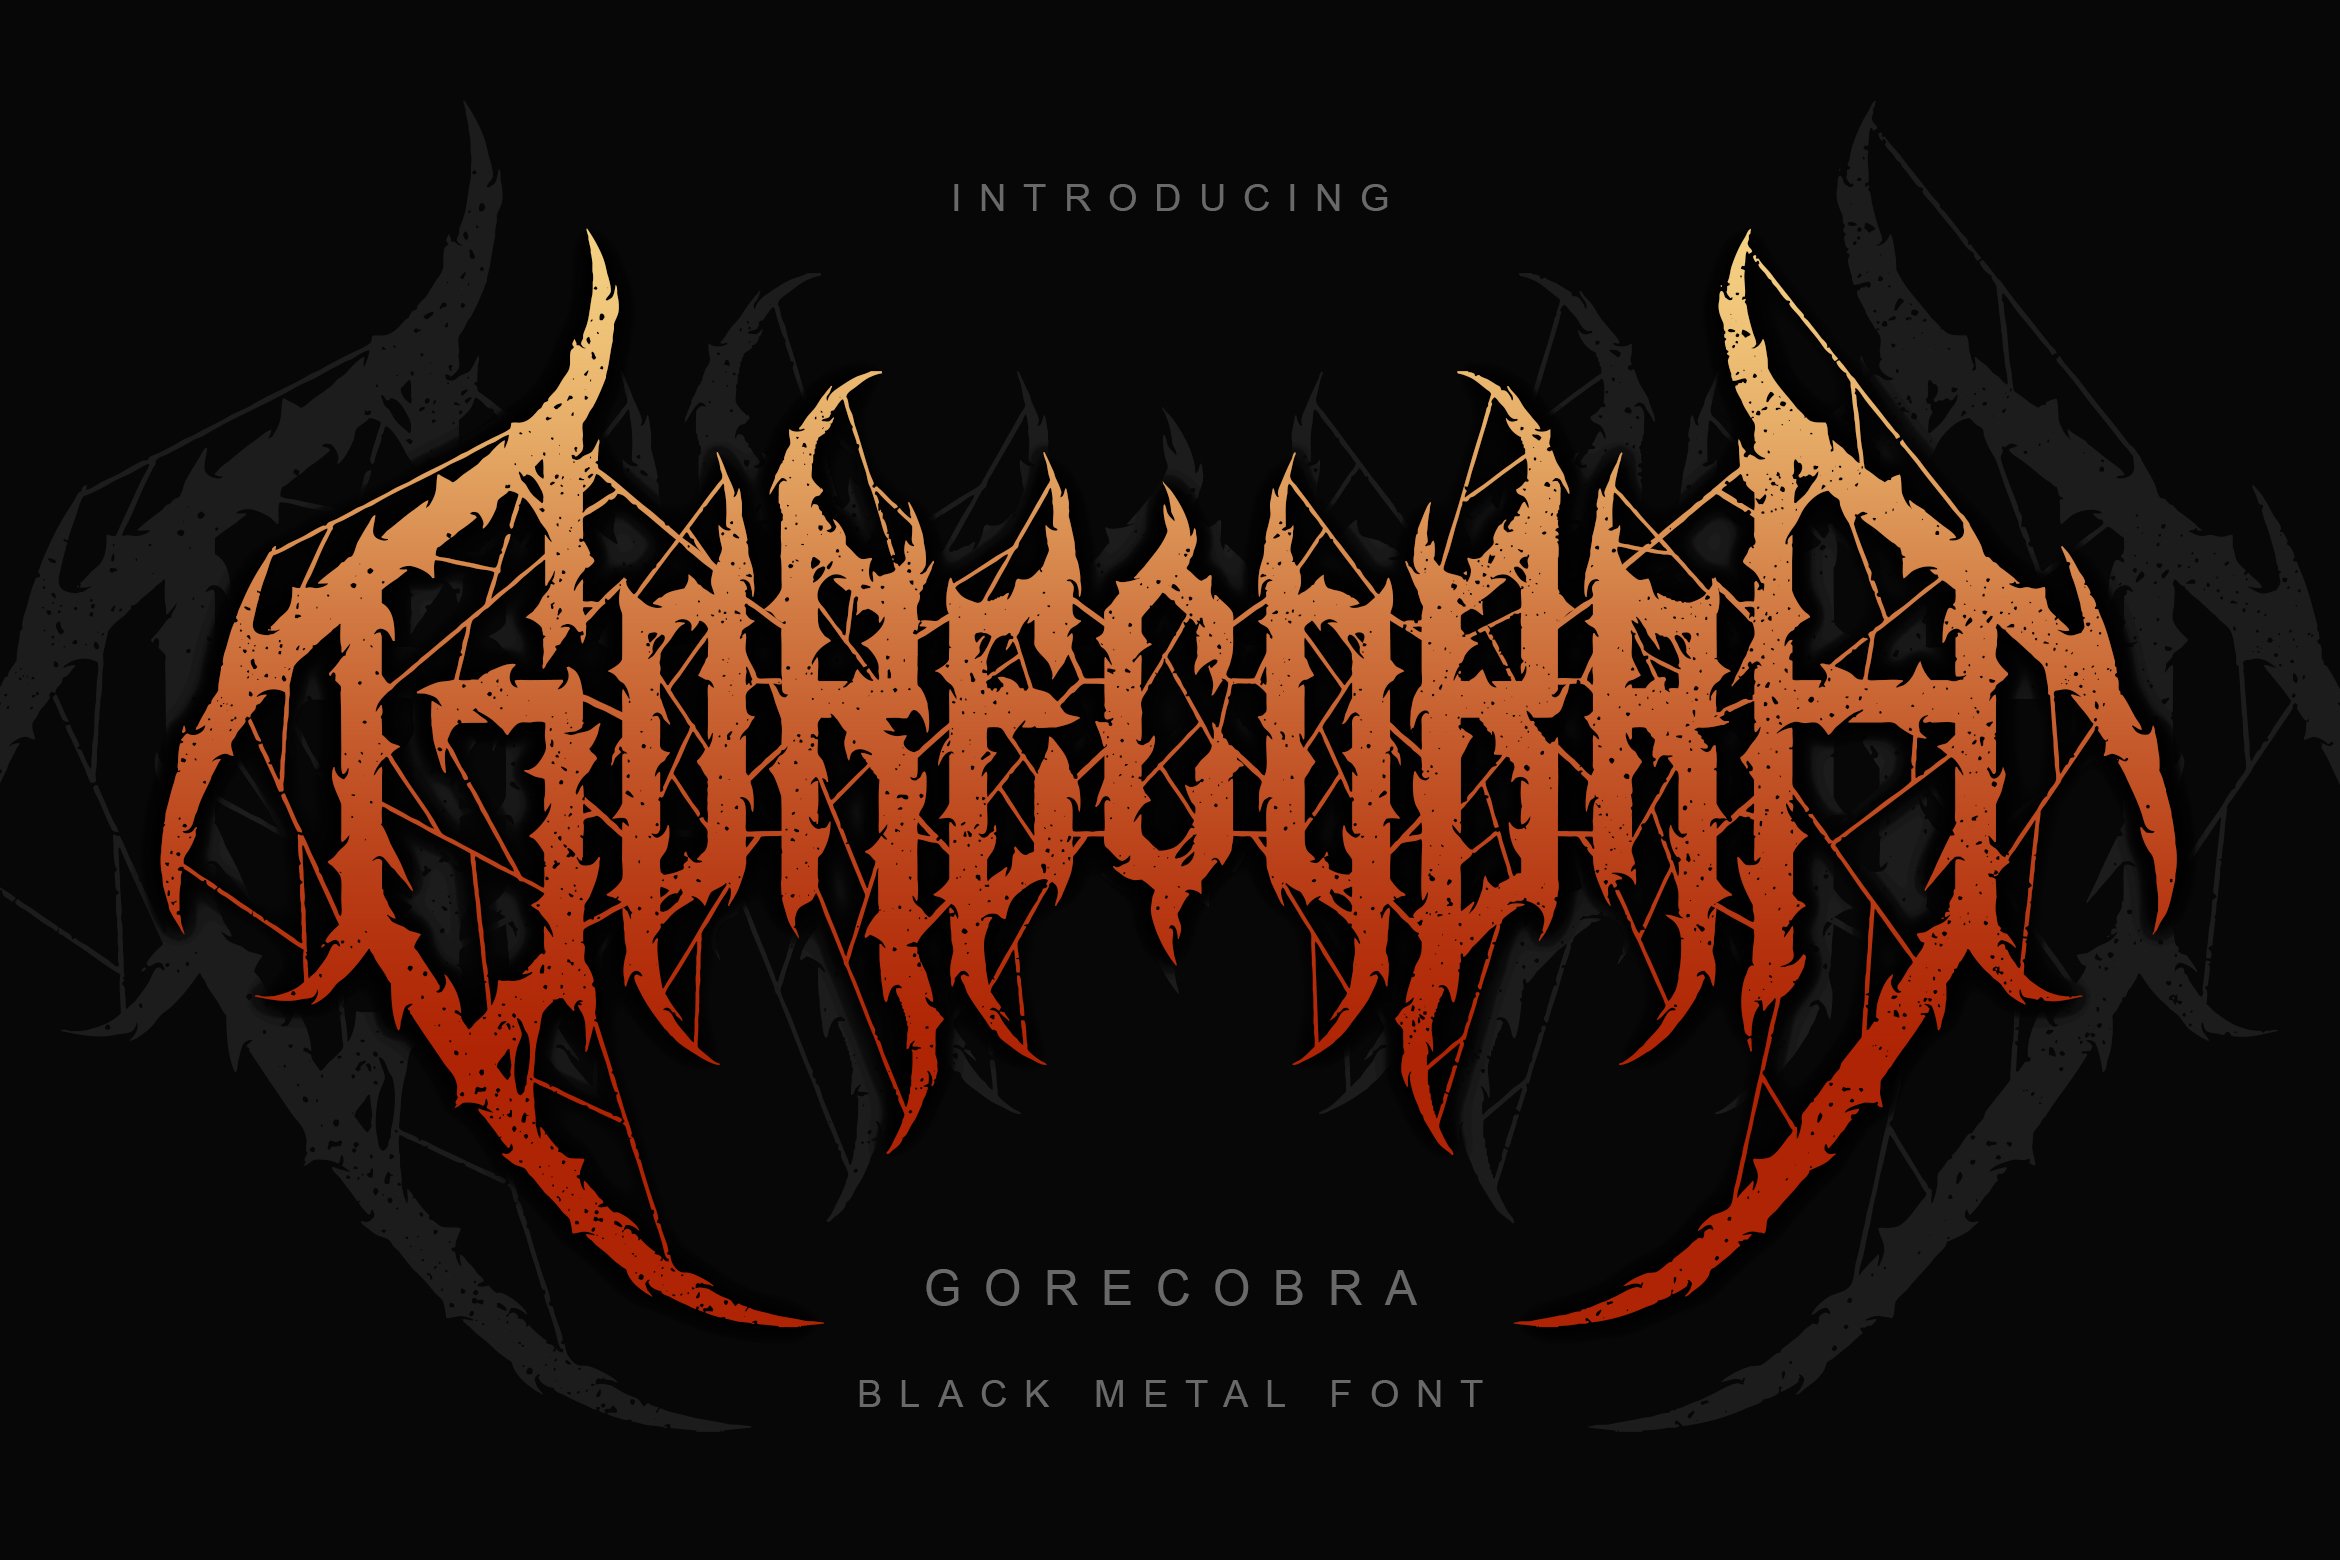 Gorecobra Black Metal Font Vol 4 